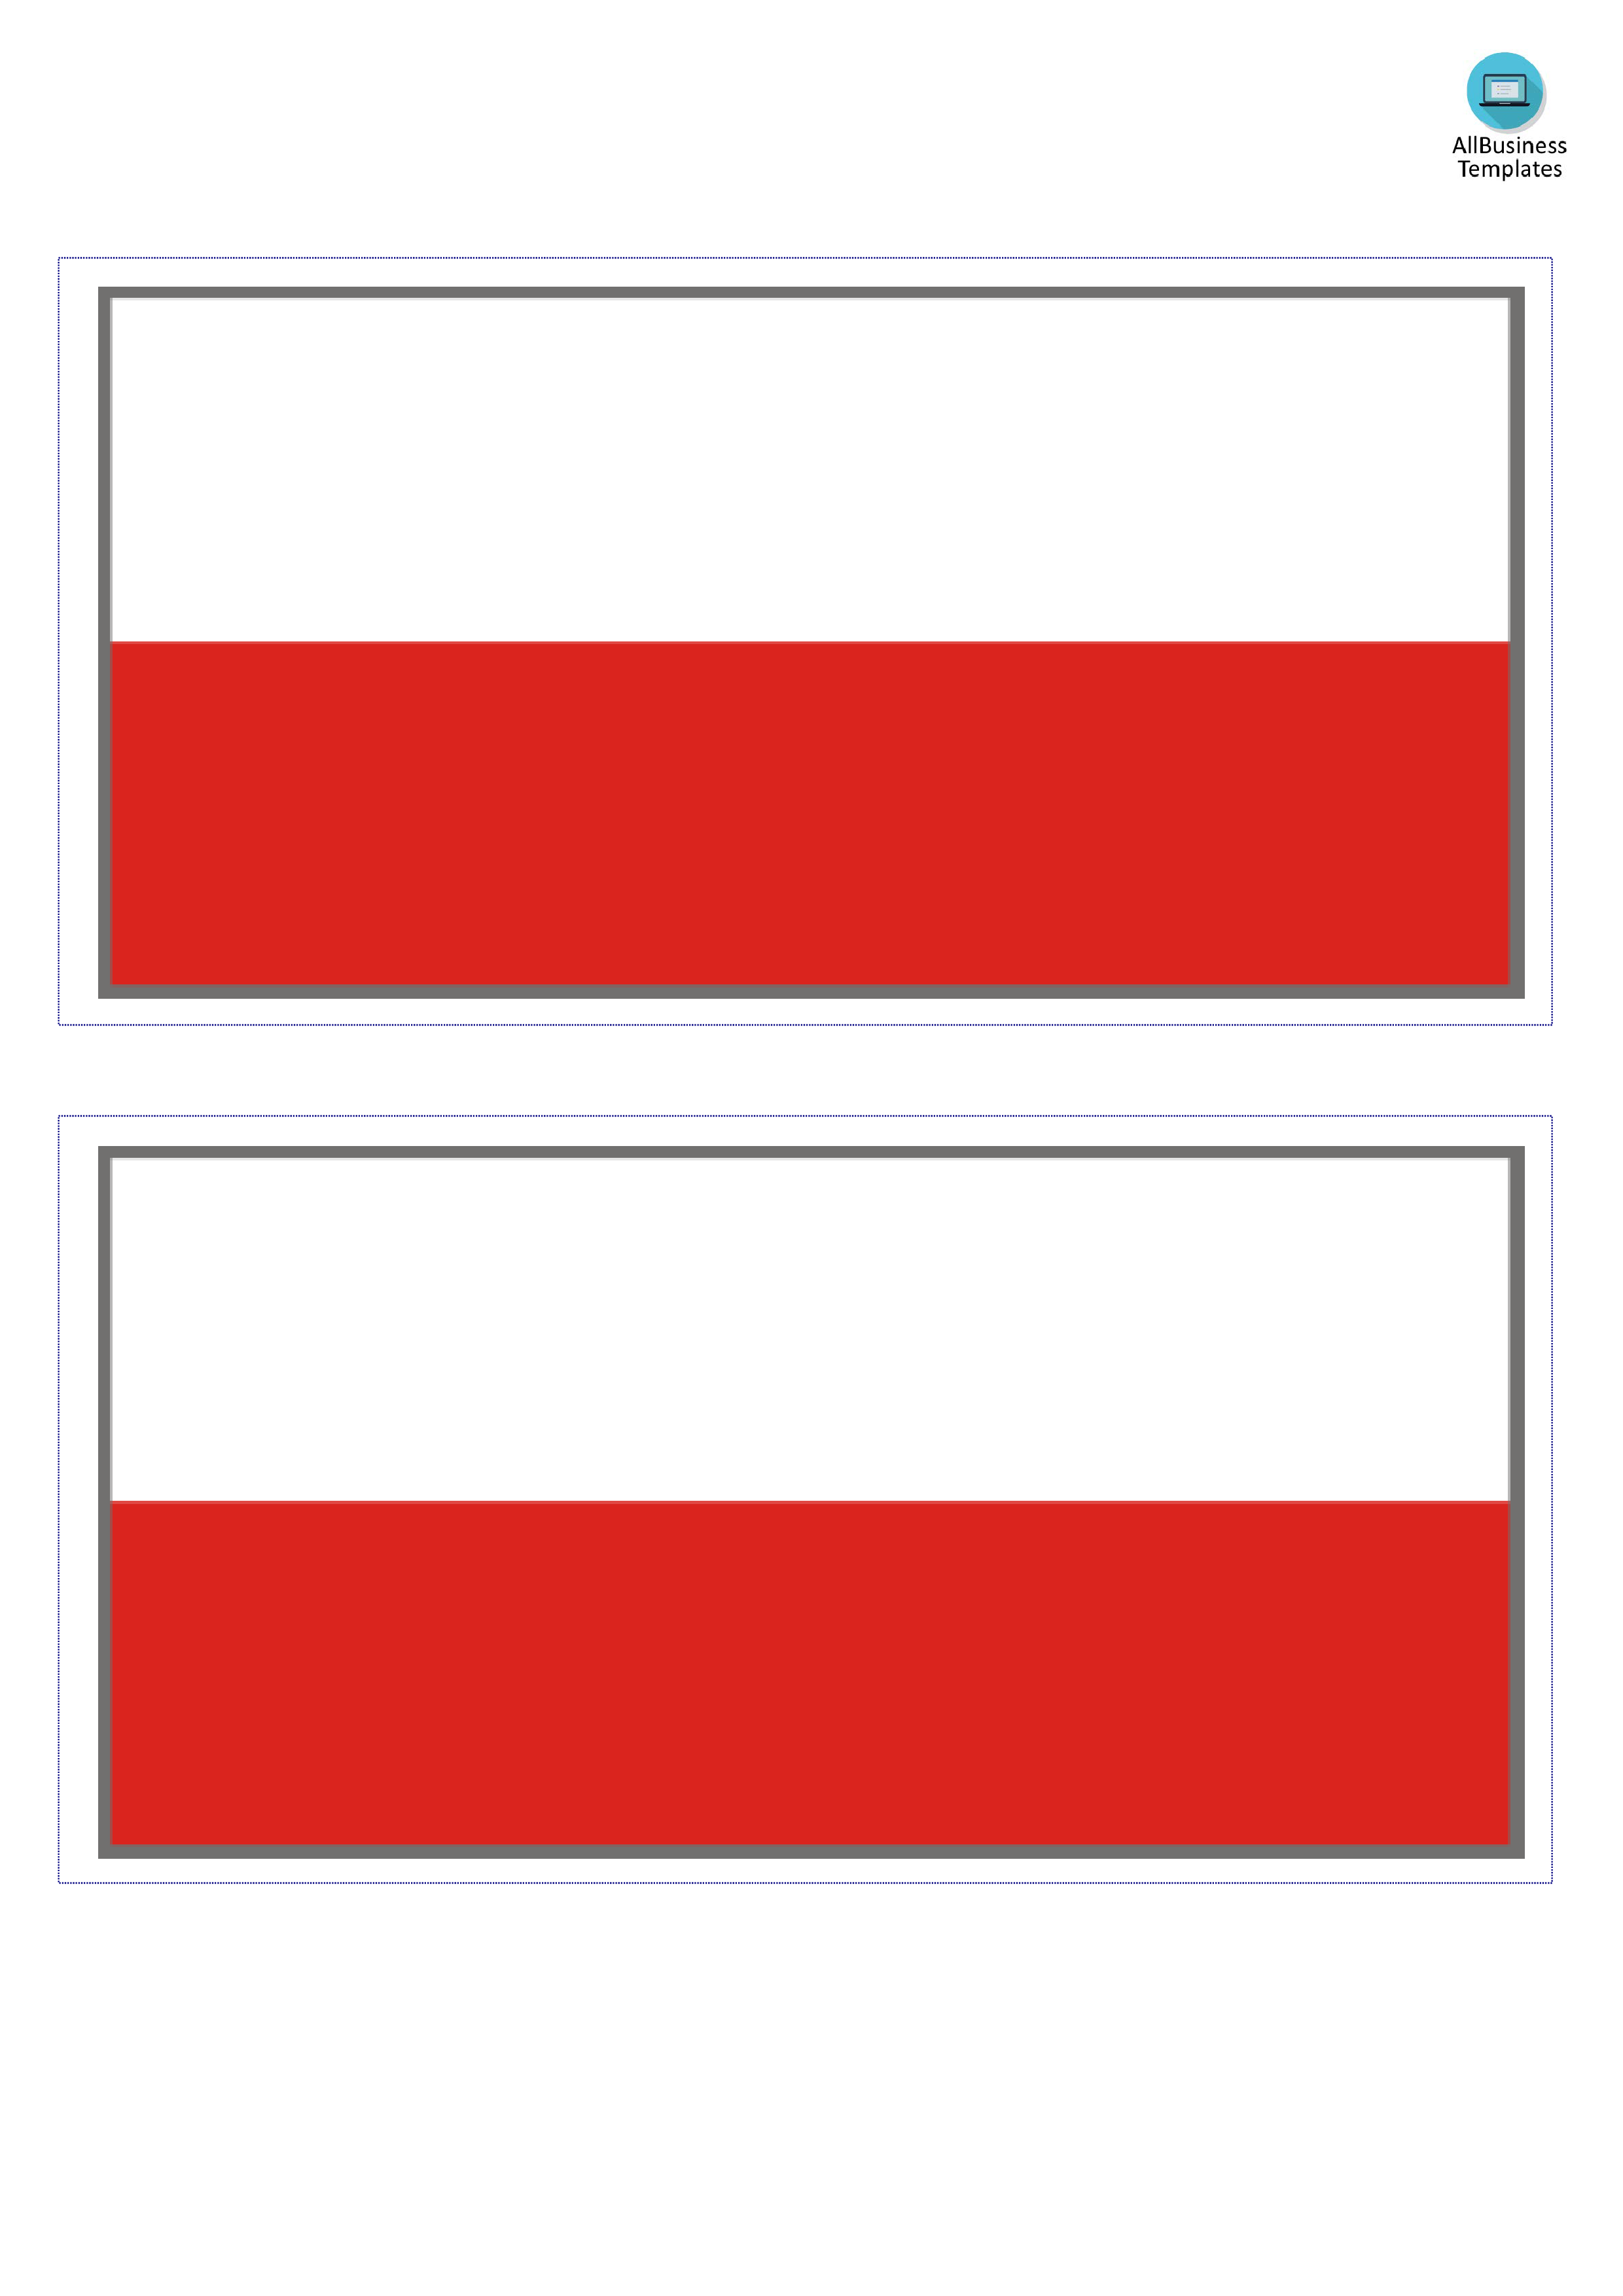 Polandflag图片